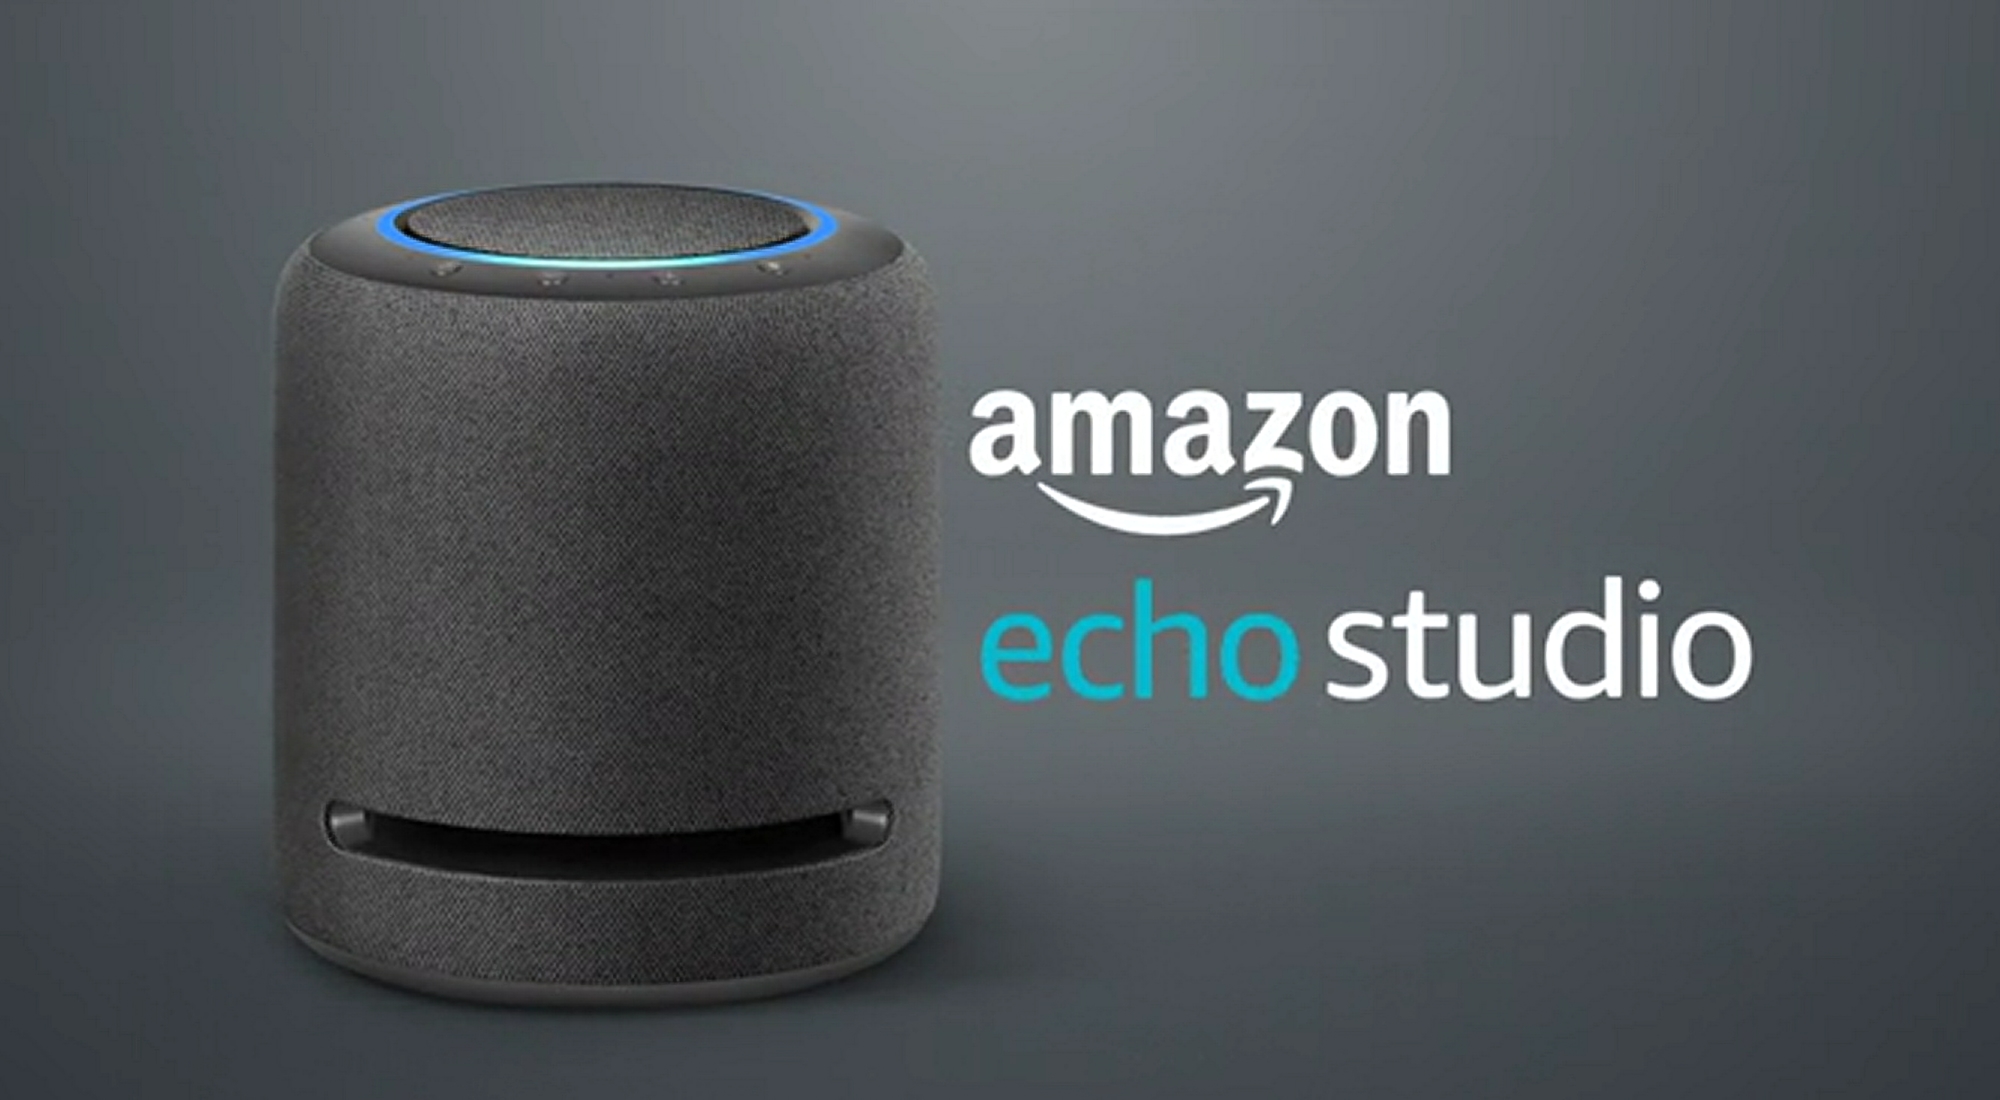 Rabatten er 60 euro: Amazon Echo Studio med Spatial Audio-surroundlyd på tilbud for 179 euro